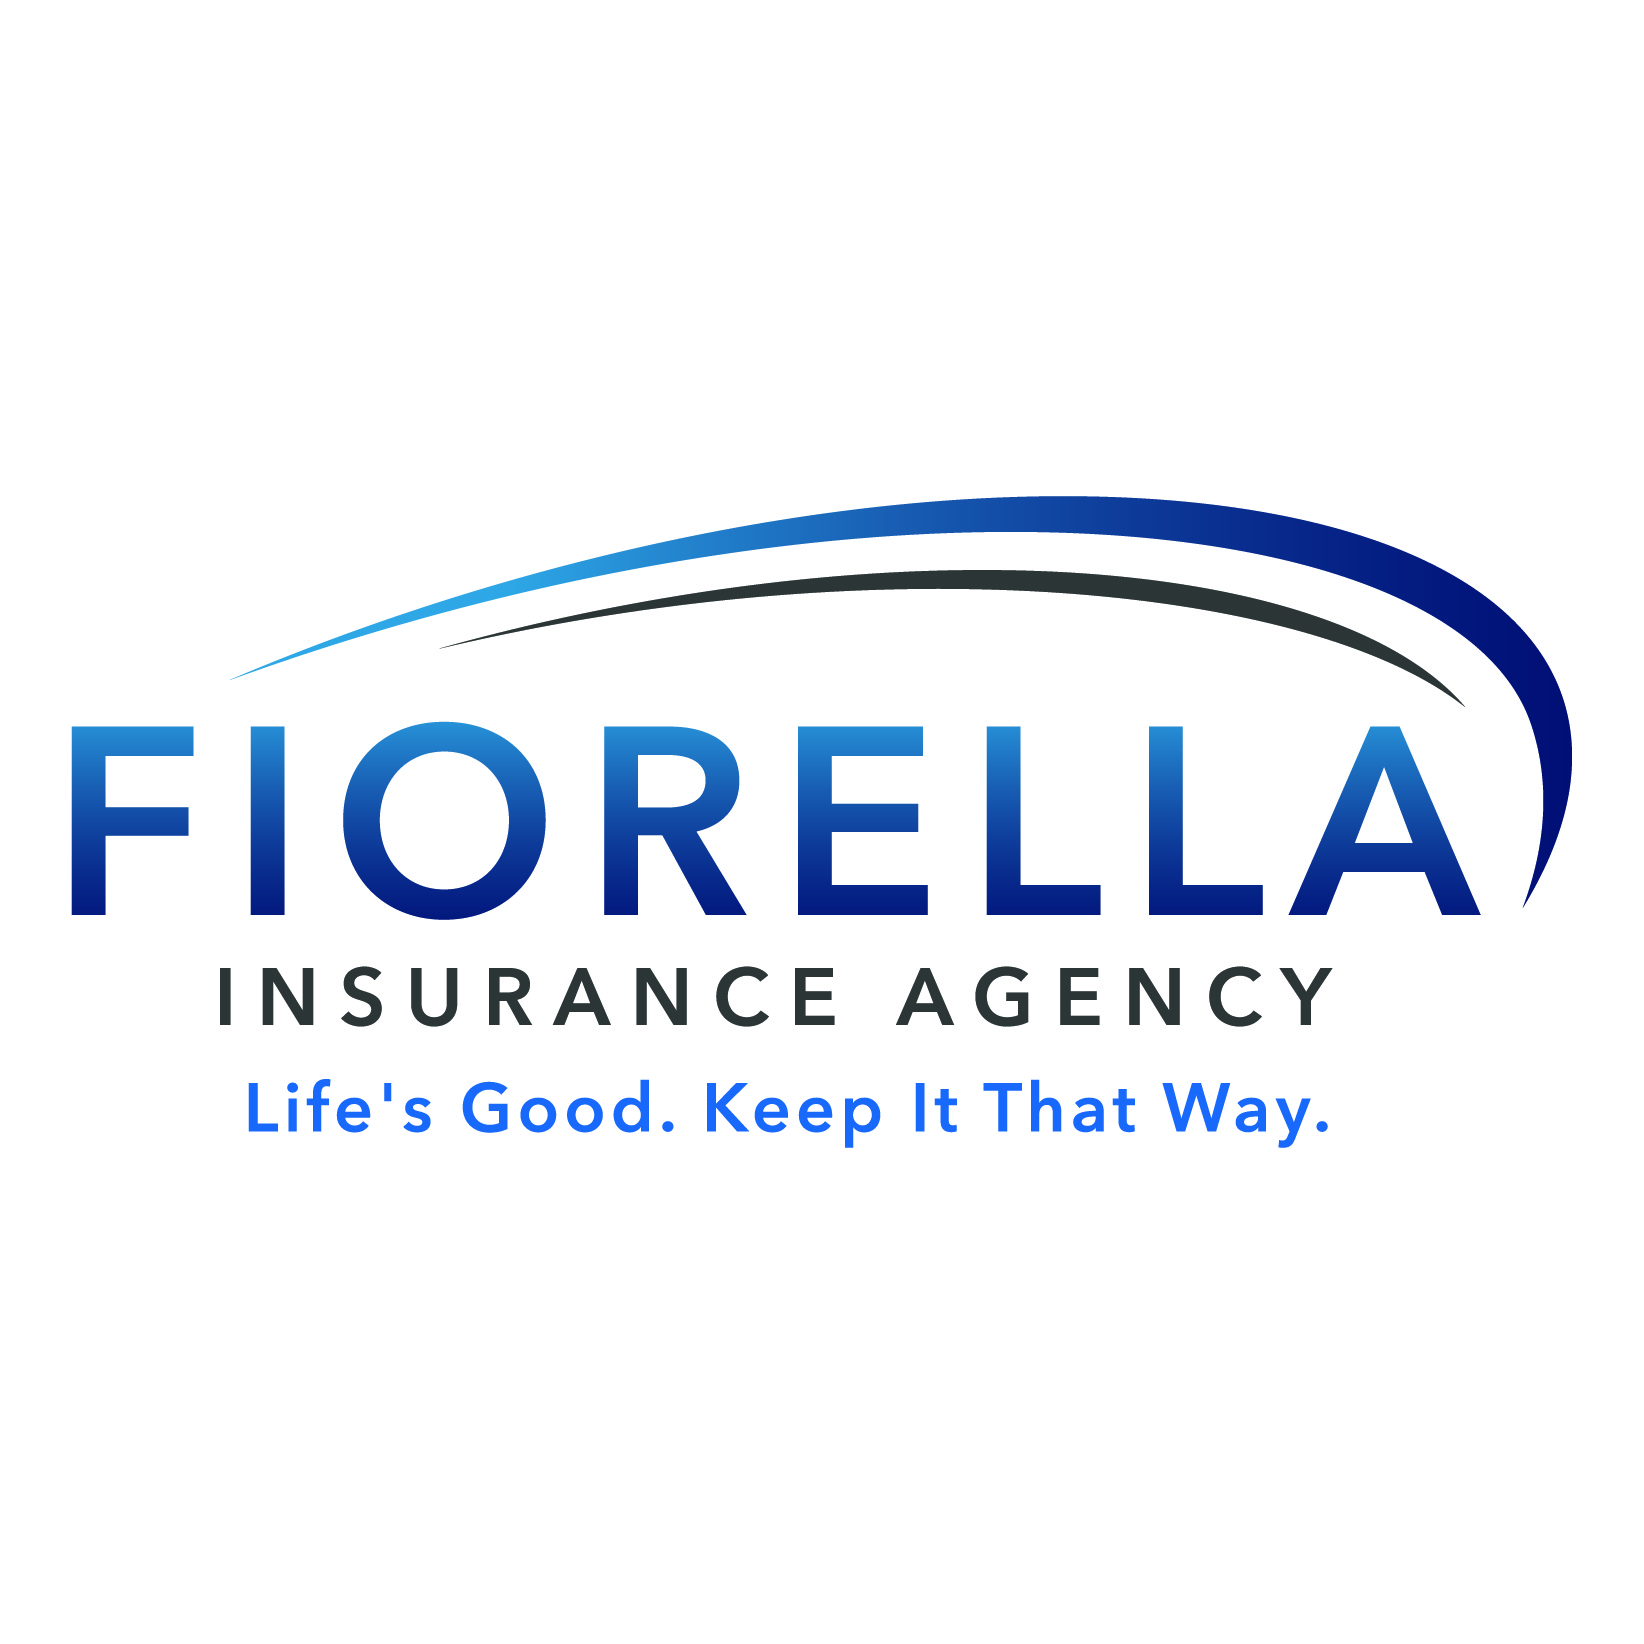 Fiorella Insurance Agency